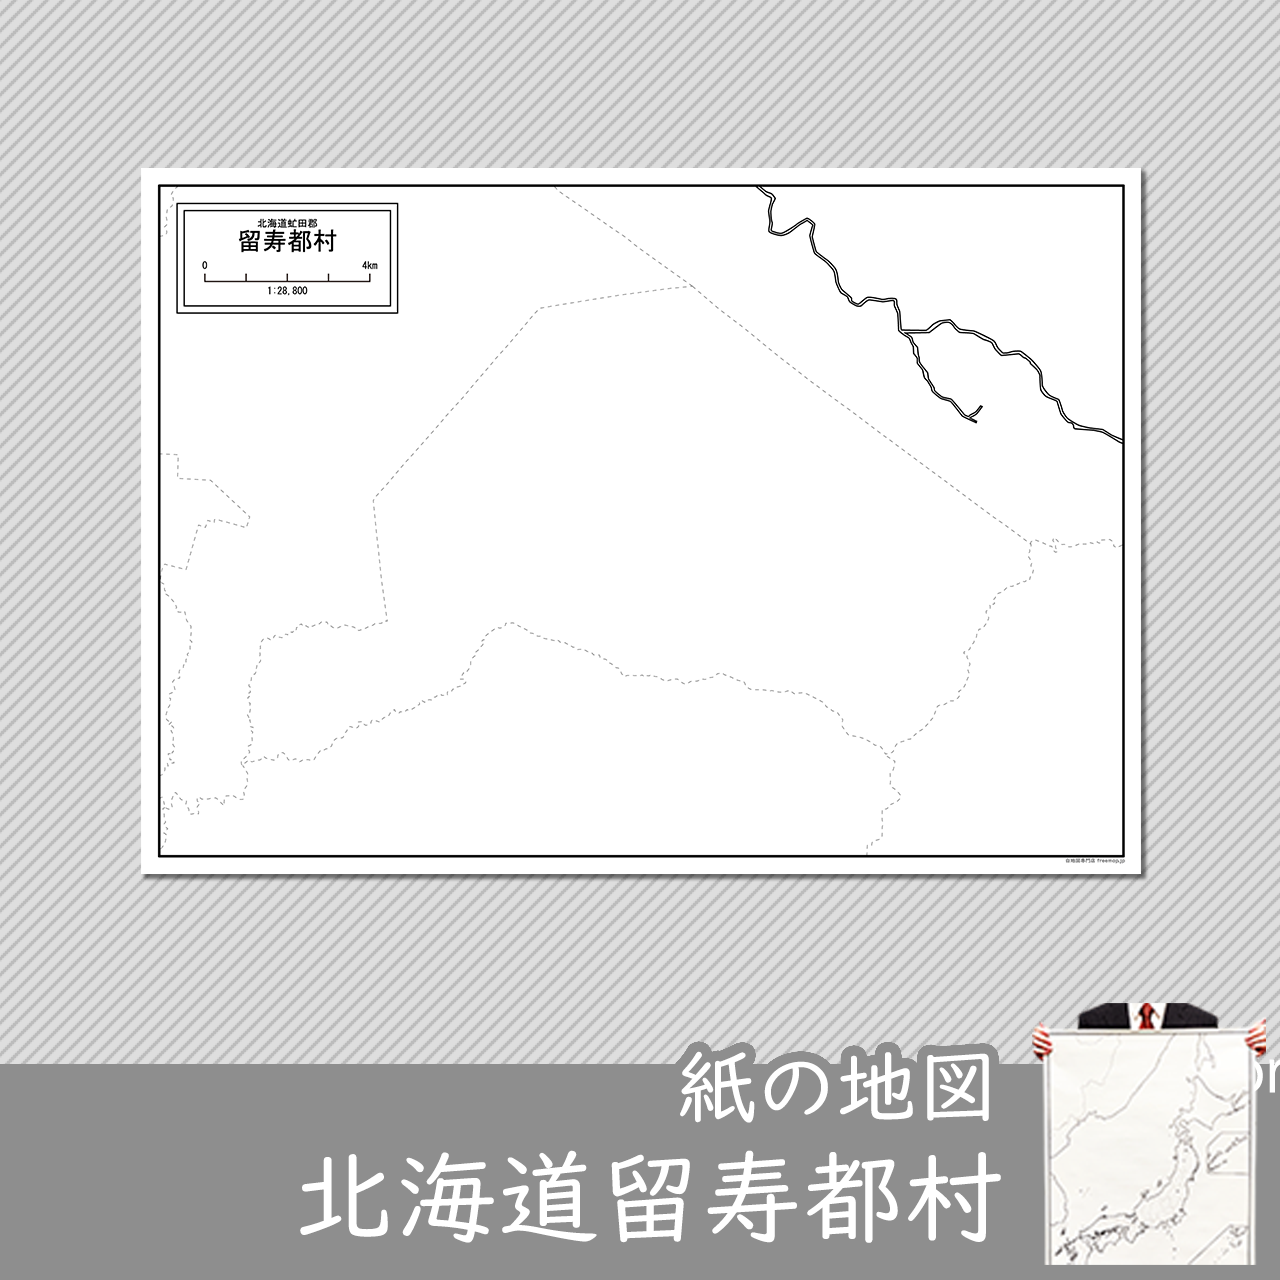 留寿都村の紙の白地図のサムネイル